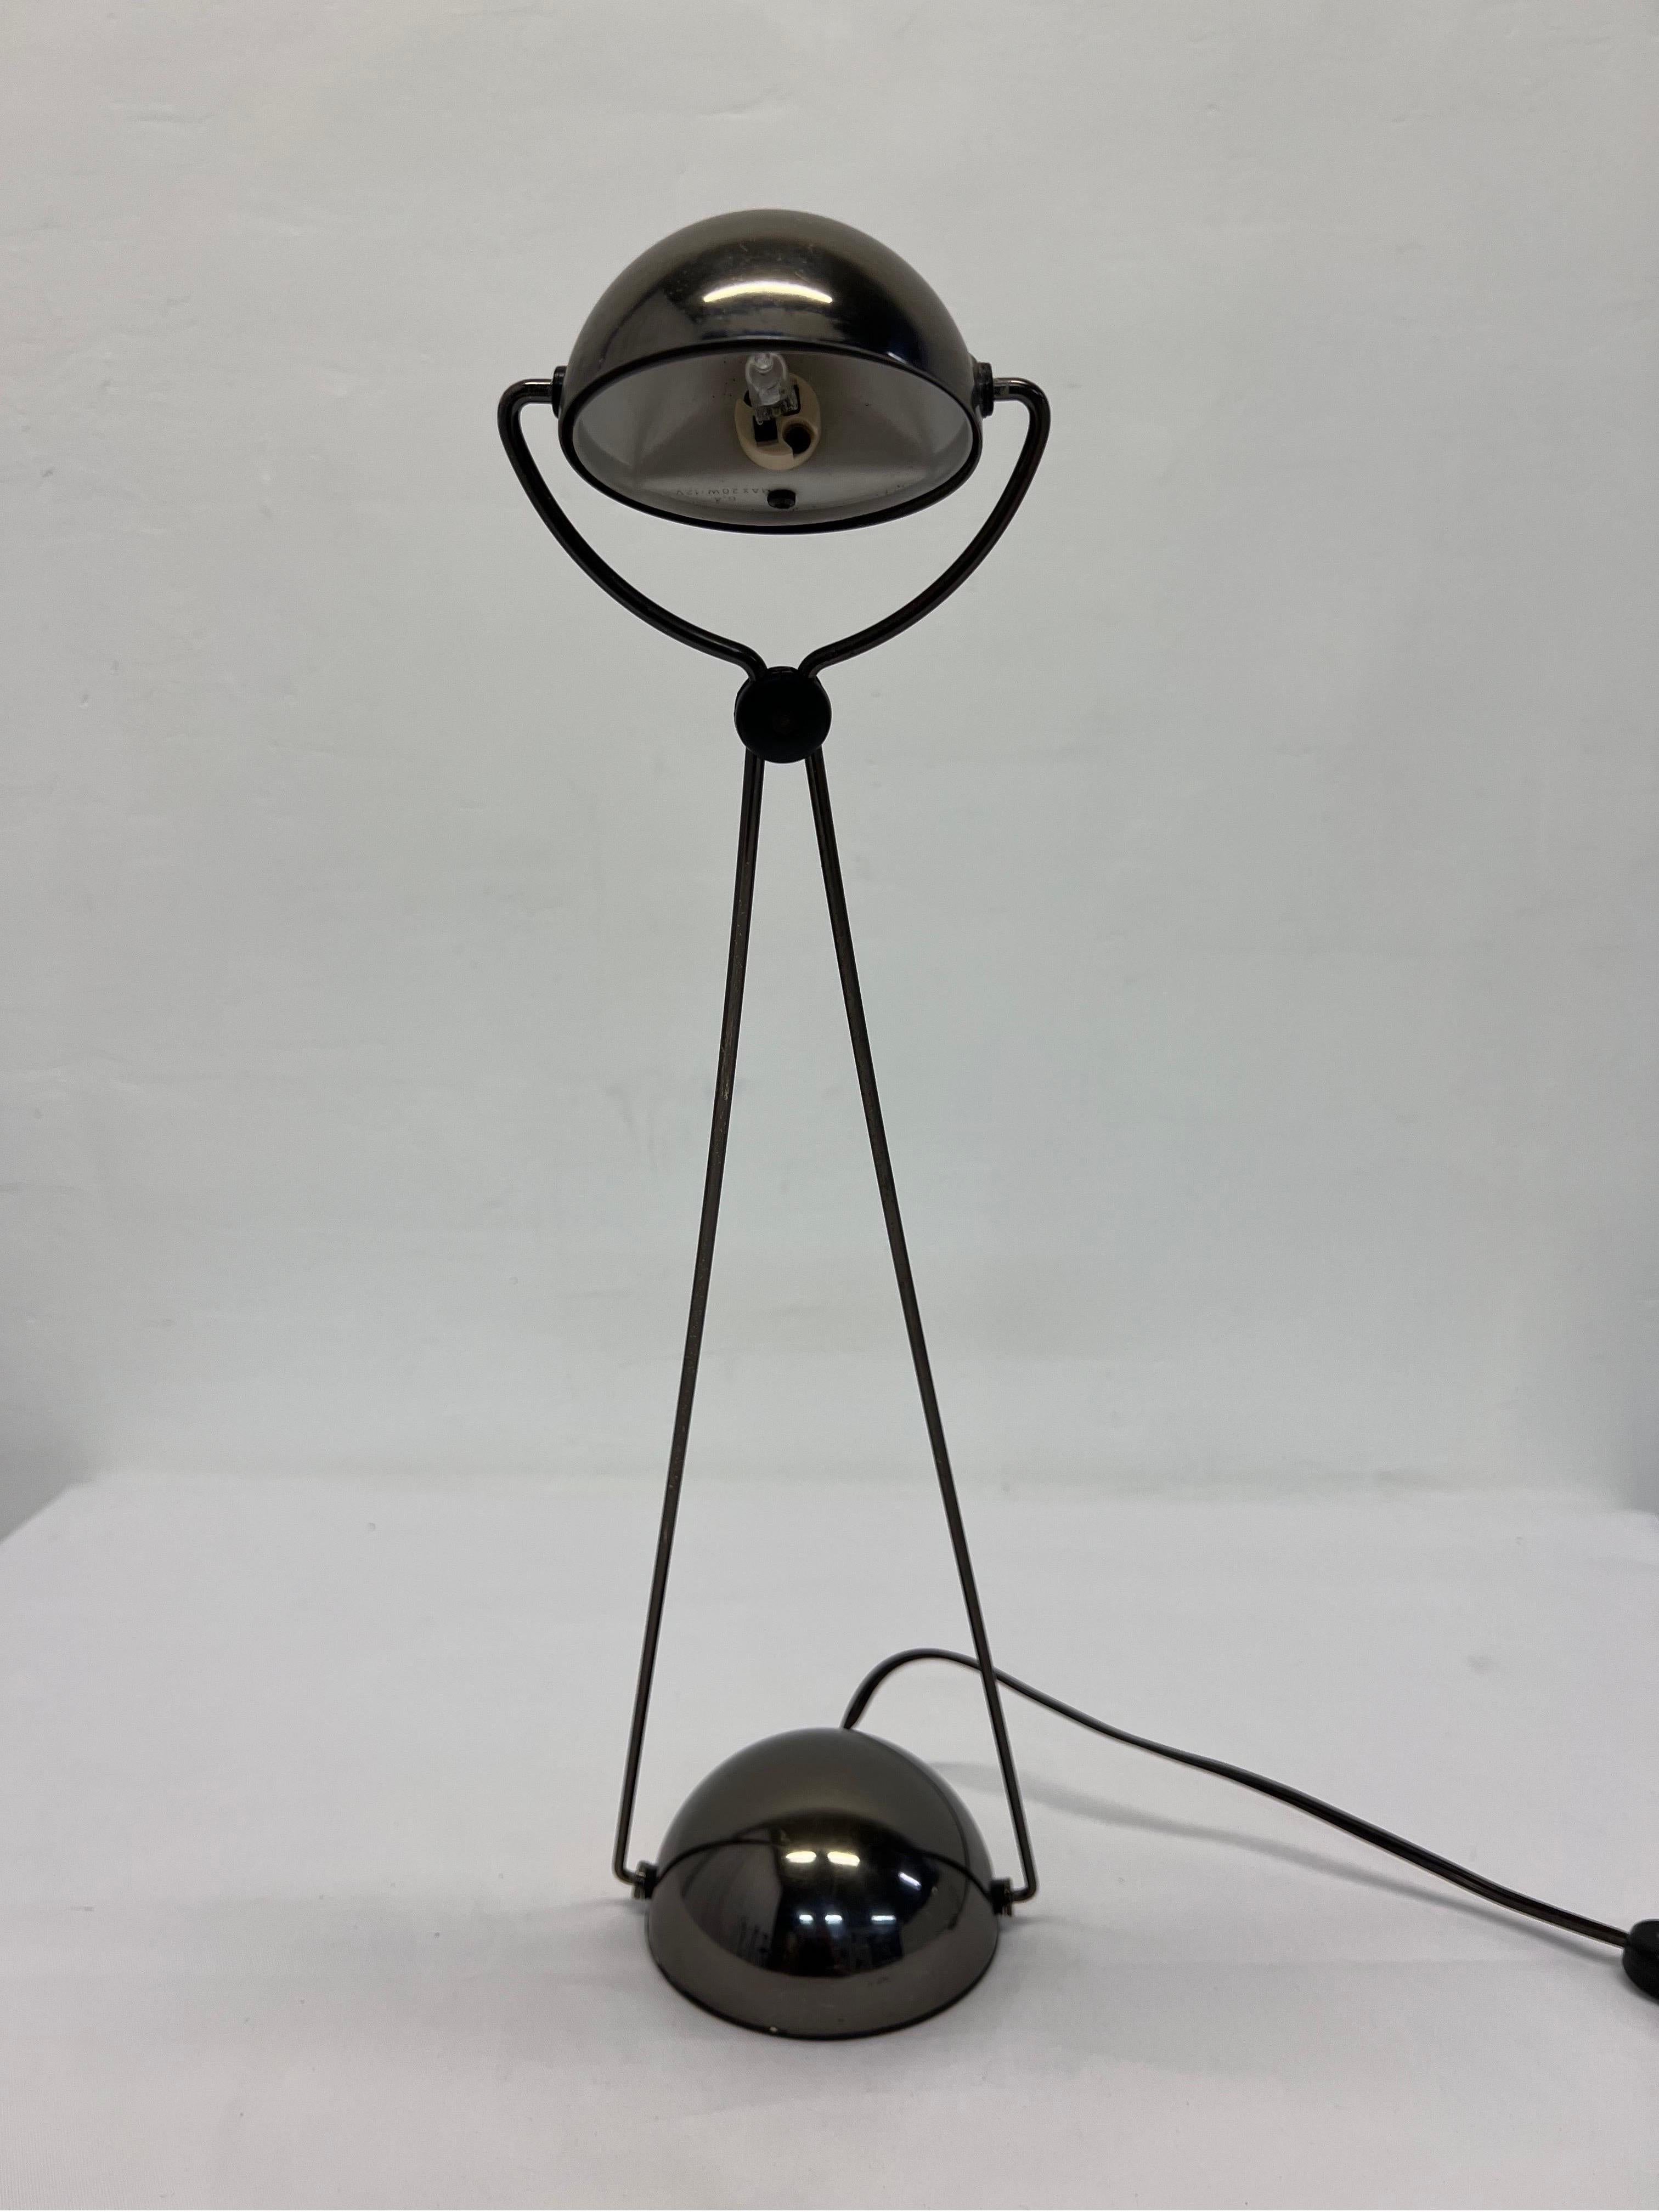 Paulo Piva Meridiana Desk or Table Lamp for Stefano Cevoli In Good Condition For Sale In Miami, FL